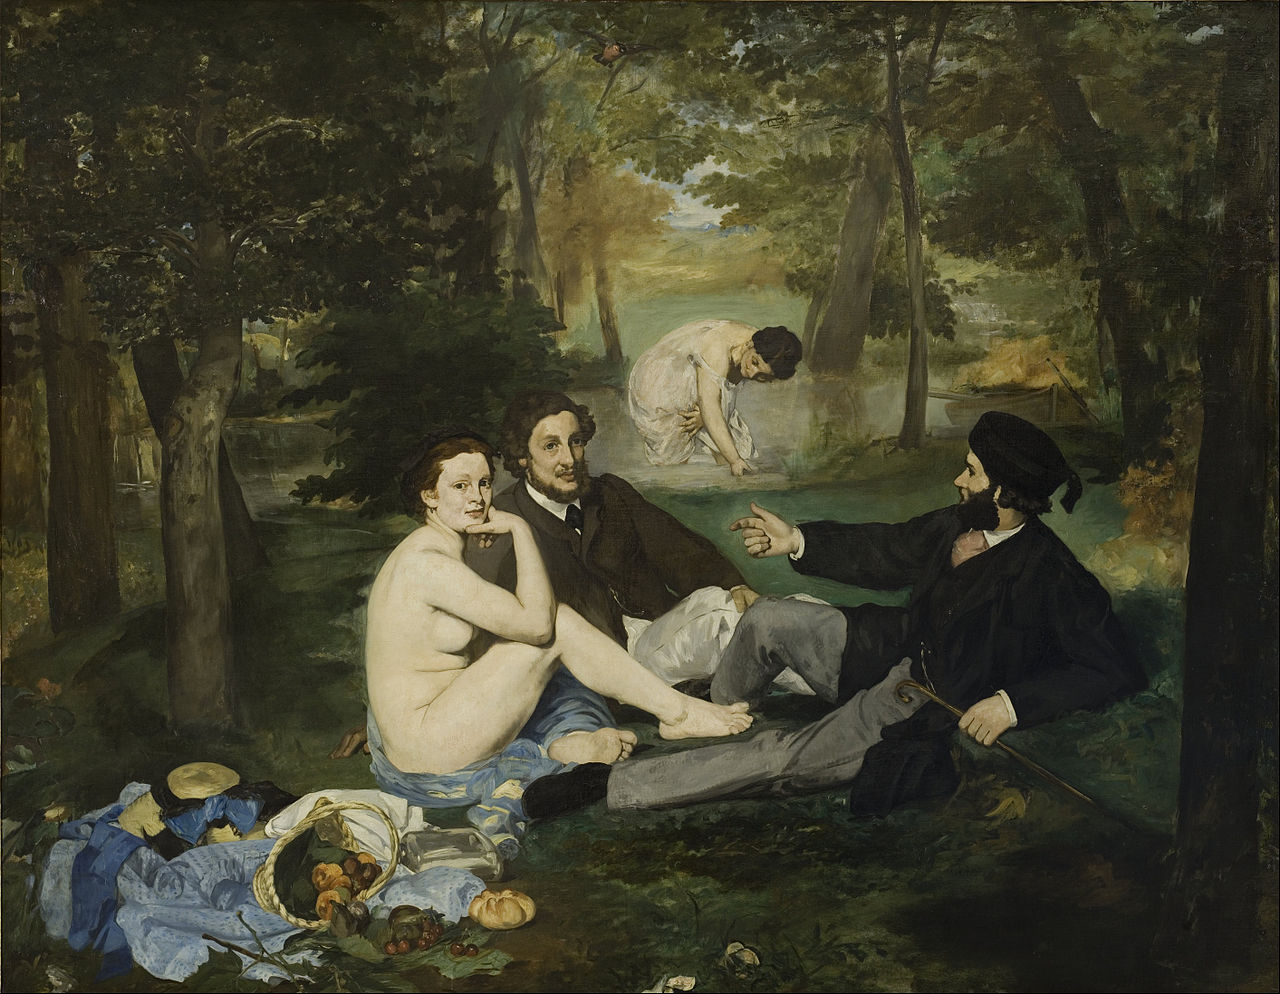 Edouard Manet. Le Déjeuner sur l'herbe. Oil on canvas. 1863